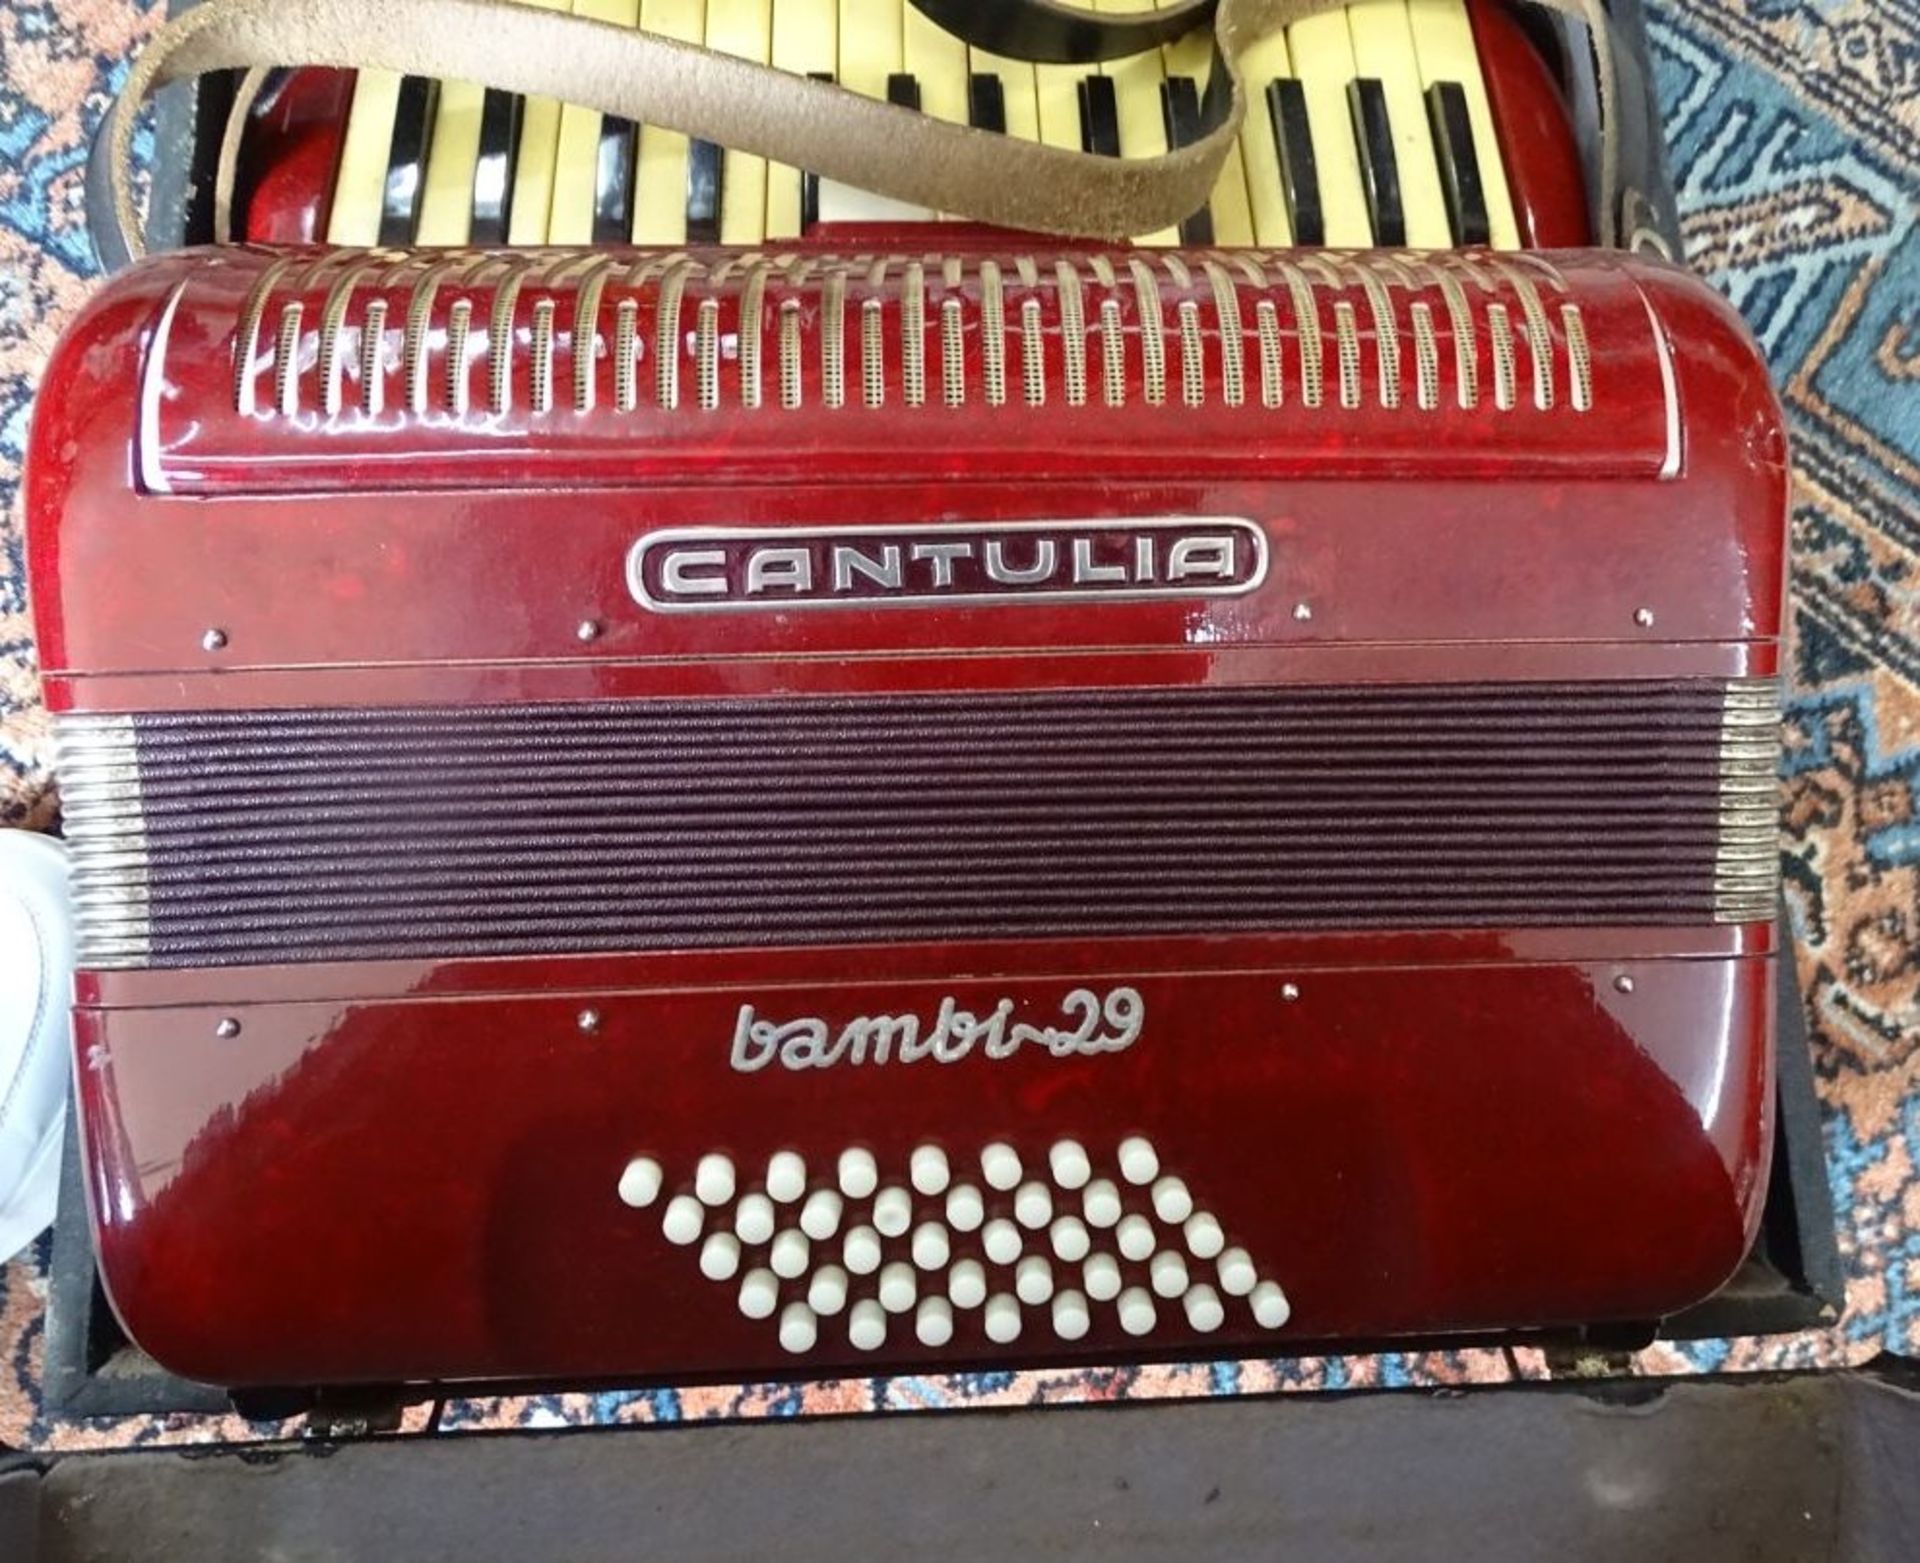 Akkordeon "Cantulia" Bambi-29 in Koffer, guter Zustand, spielbereit - Bild 2 aus 4